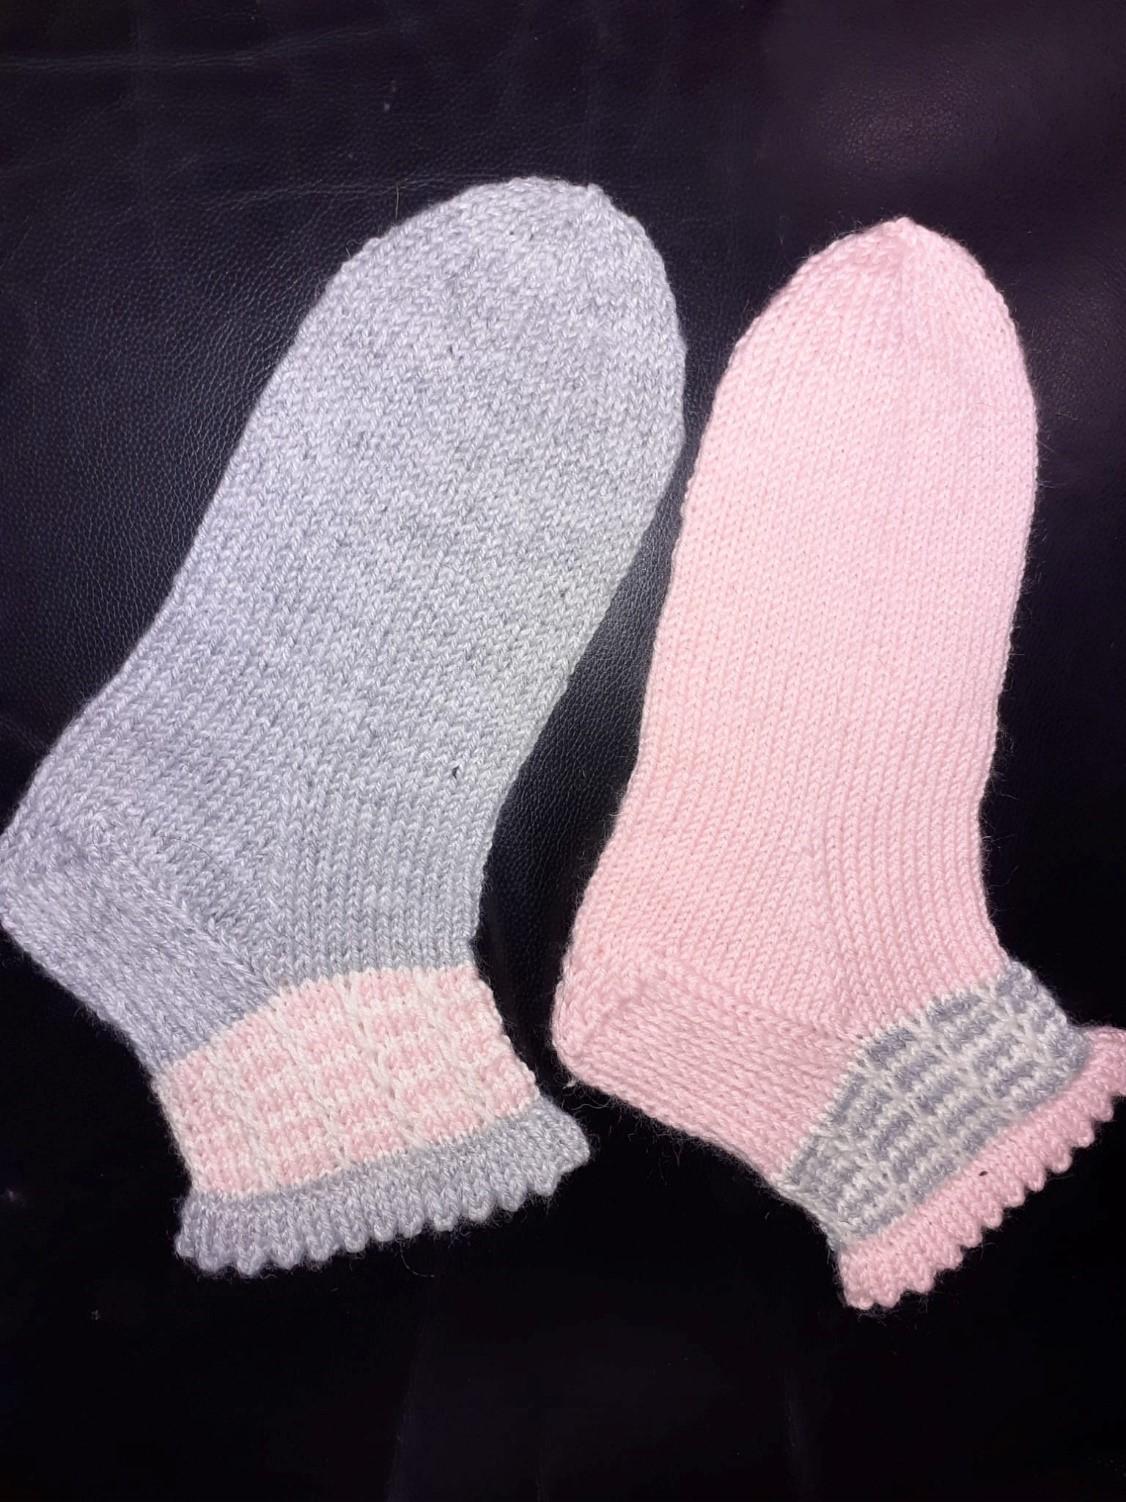 Anni Pitkämäen neulomat nirkkoreunasukat. Toinen sukka on nirkkoreunalta ja kärjestä harmaa ja sen varressa on vaaleanpunaisella ja valkoisella kerrosrivinousukuvio. Toisessa sukassa kärki ja nirkkoreuna vaaleanpunaisia, sekä kuviossa valkoista ja harmaata. 